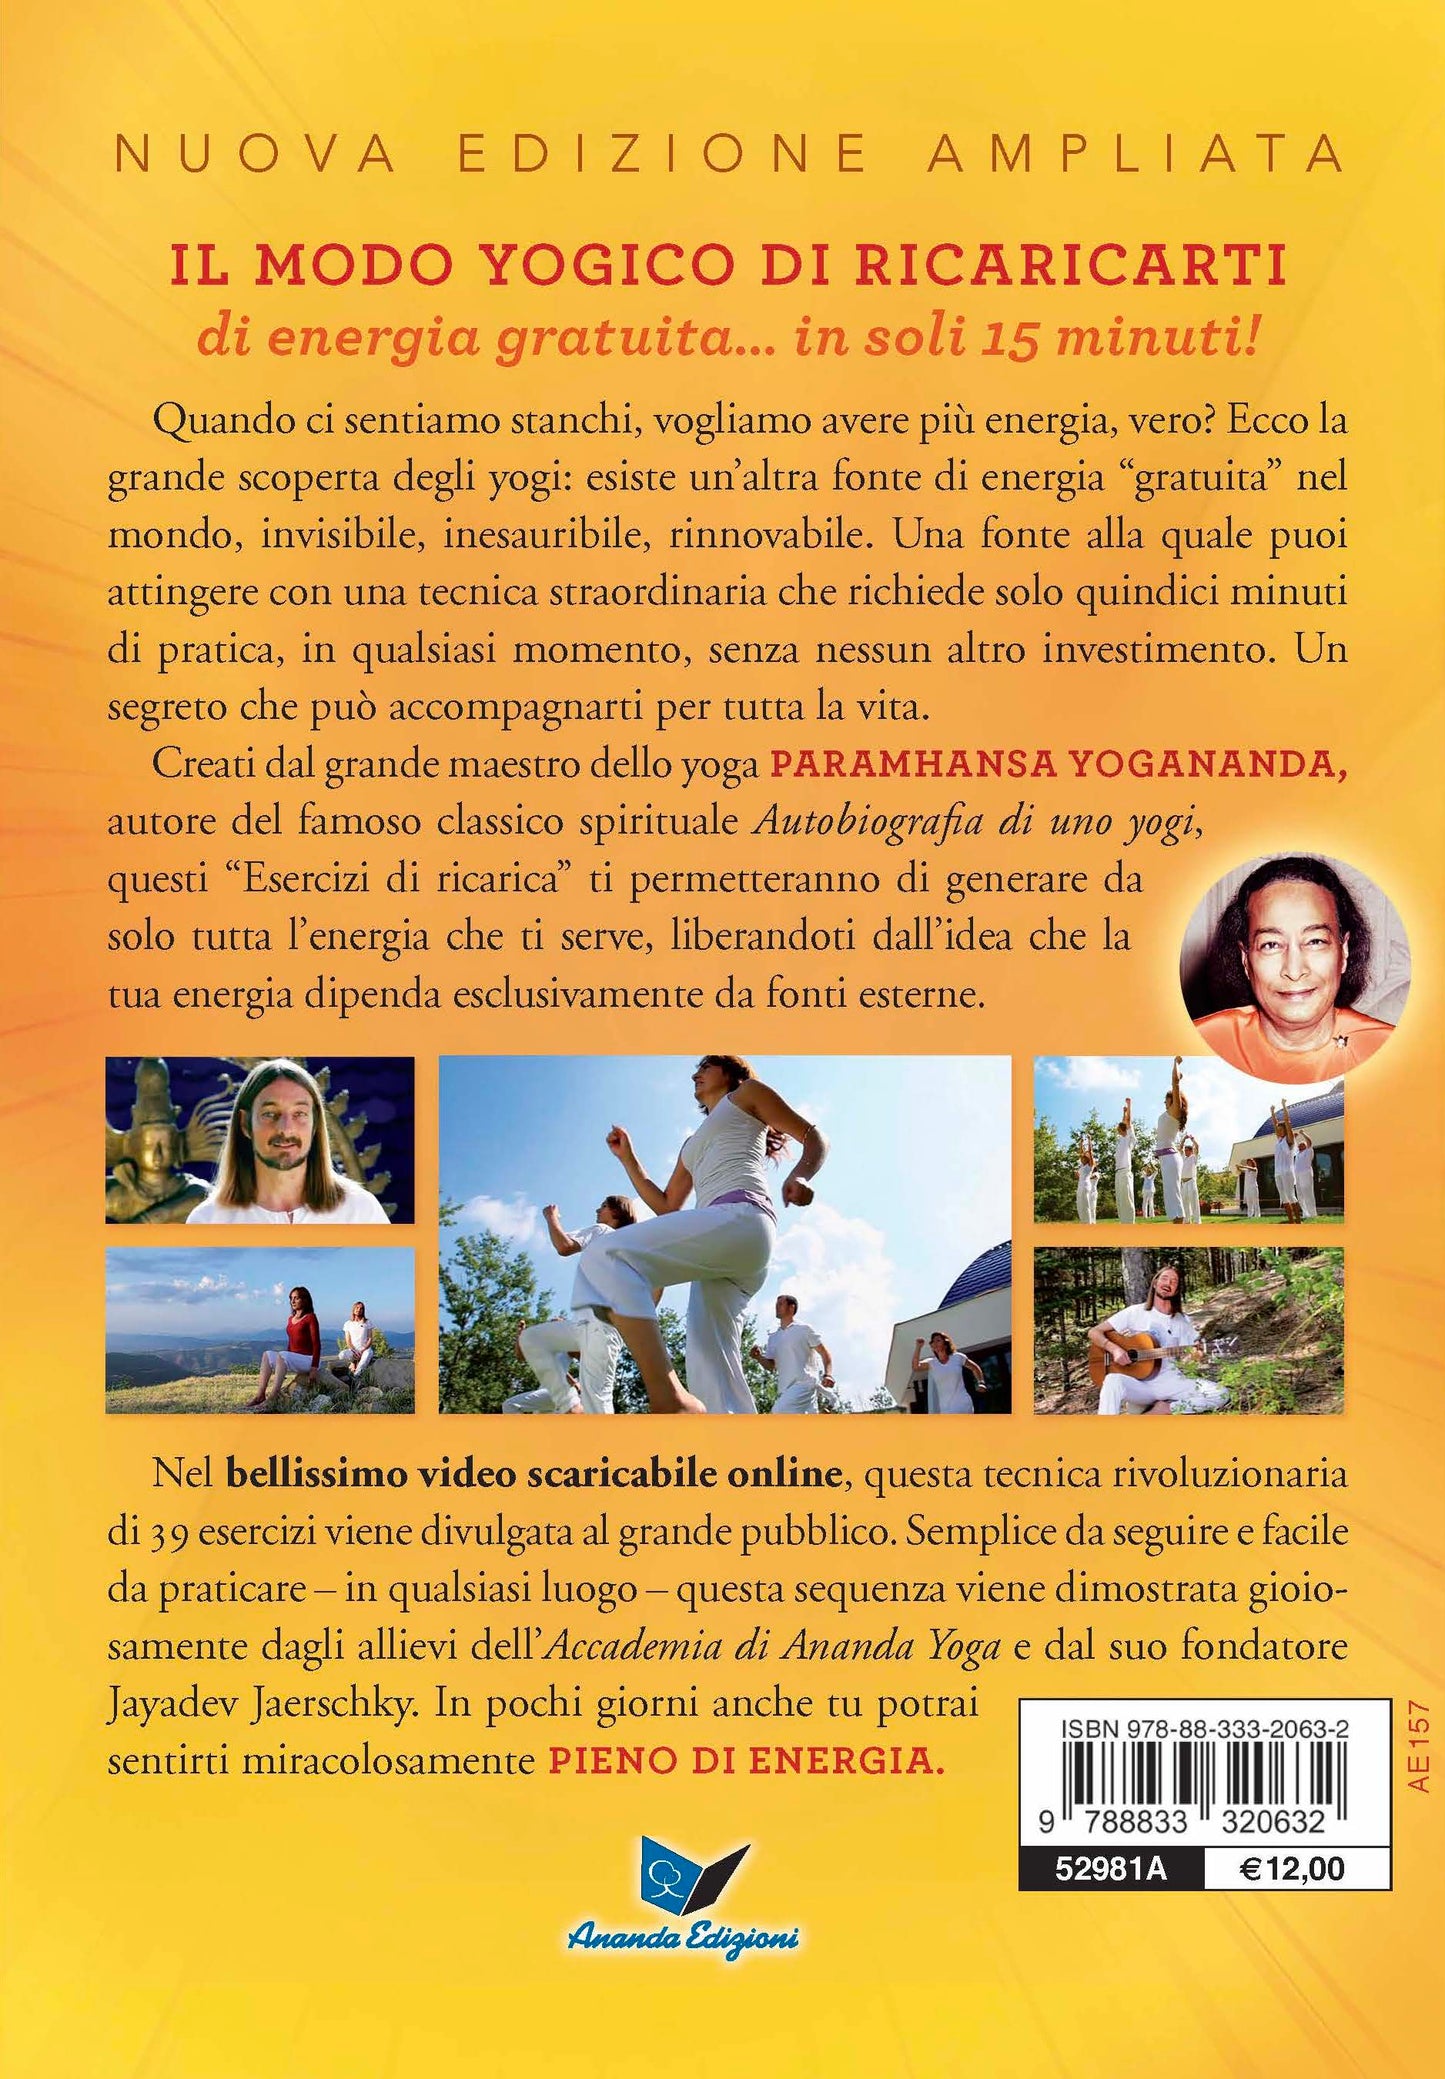 Gli Esercizi di ricarica di Paramhansa Yogananda Nuova Edizione. Come trasformare corpo, mente e anima con l'energia vitale